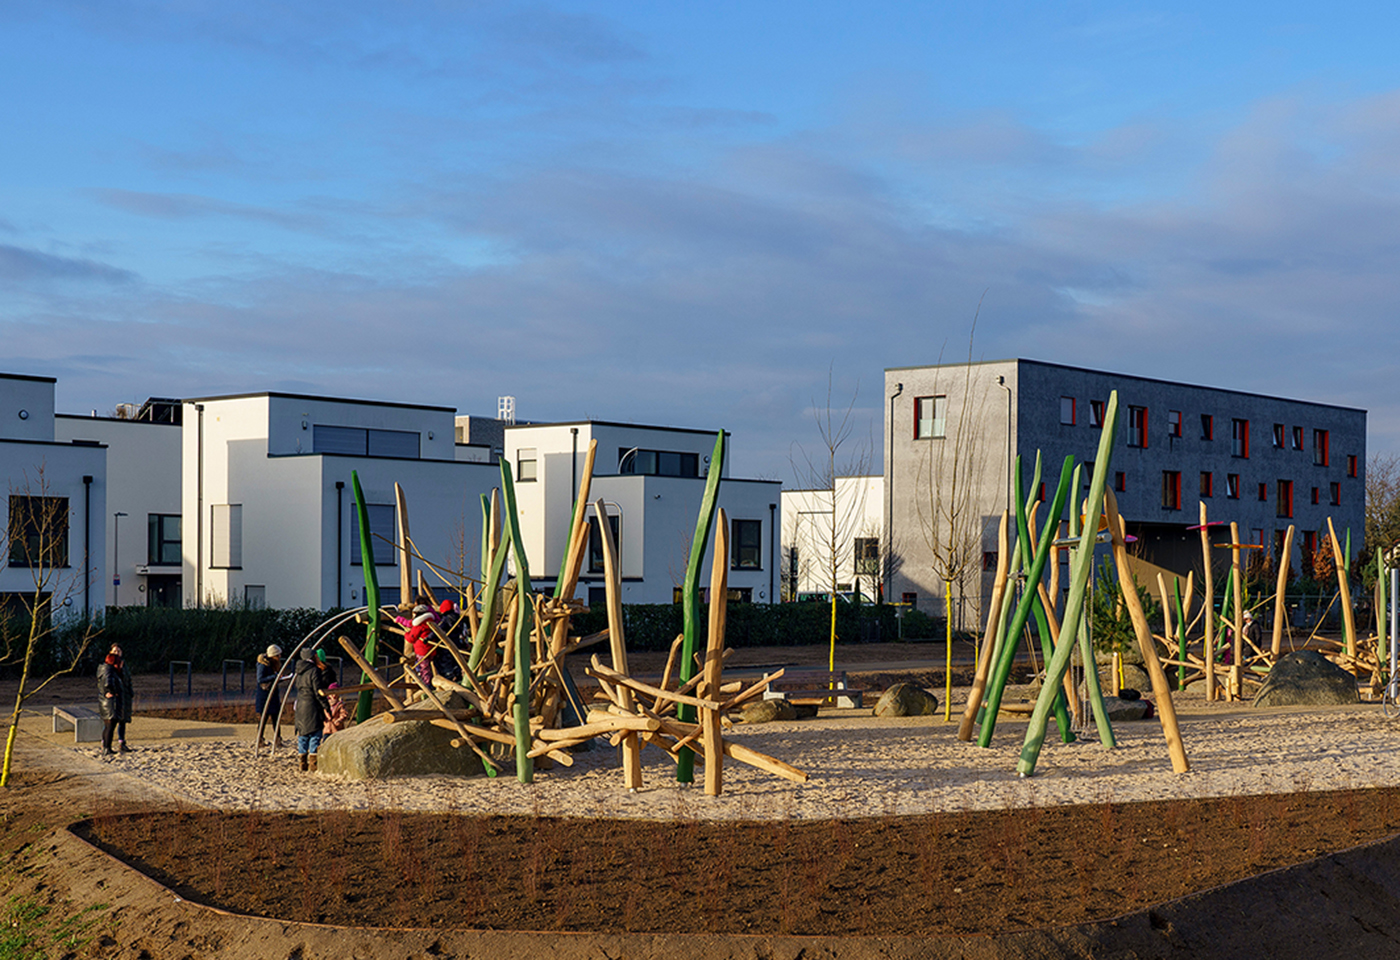 Spielplatz Stadtdüne auf FRANKLIN mit Klettergerüst aus Holzpfählen in großem Sandkasten.